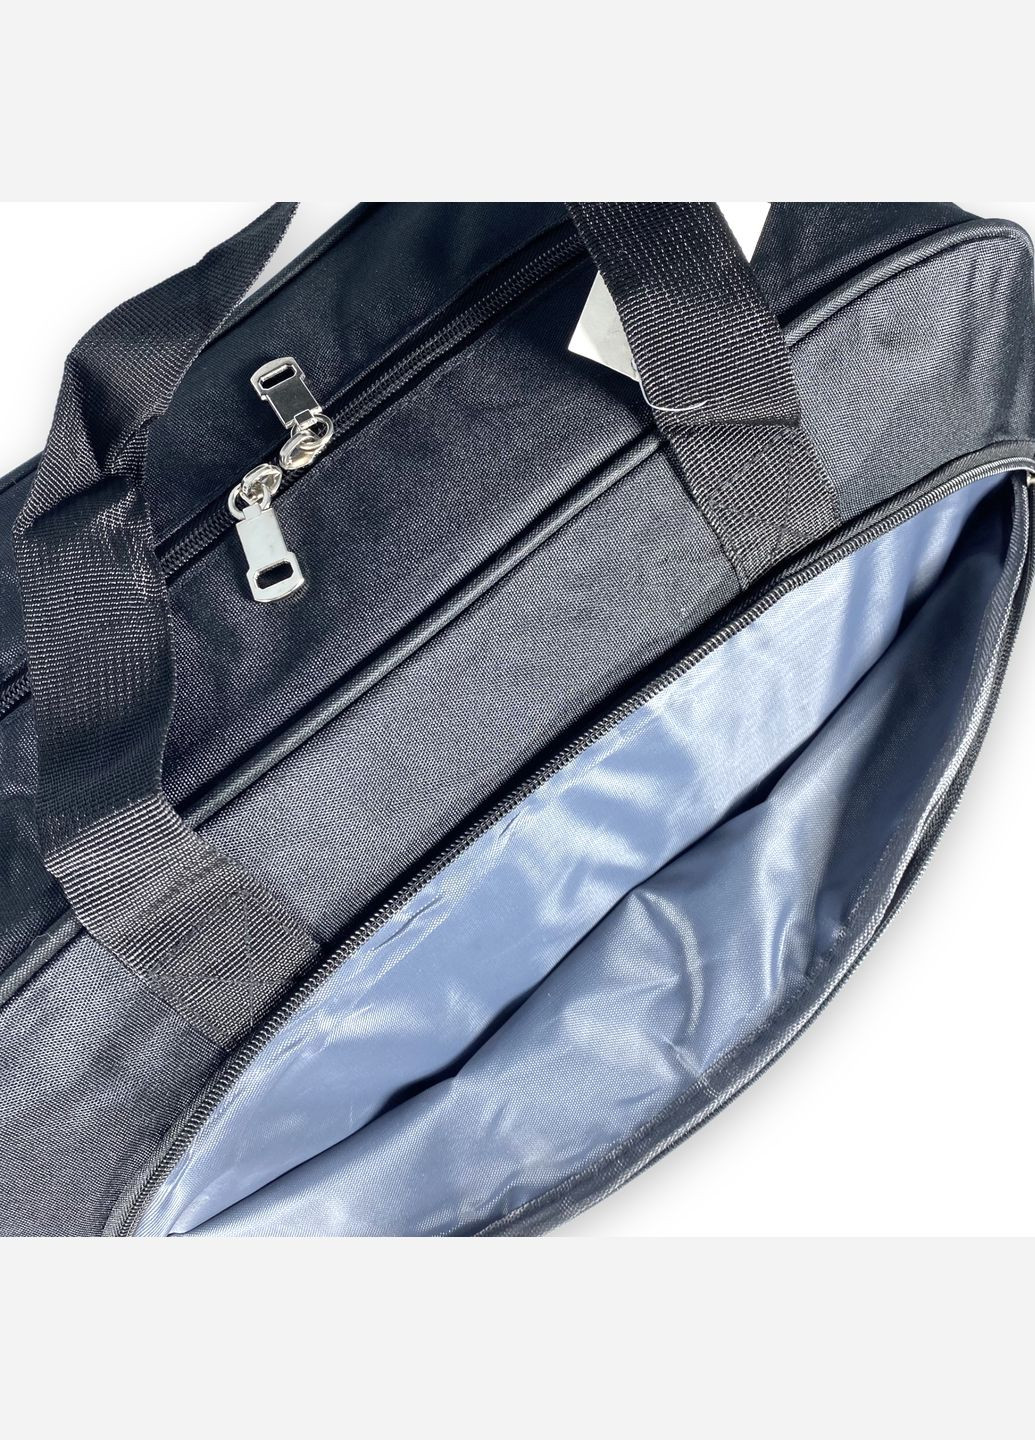 Дорожня сумка 25 л 1 відділ 2 бокові кишені кишеня на лицевій стороні розмір: 45*25*20 см чорна SBW (286421409)